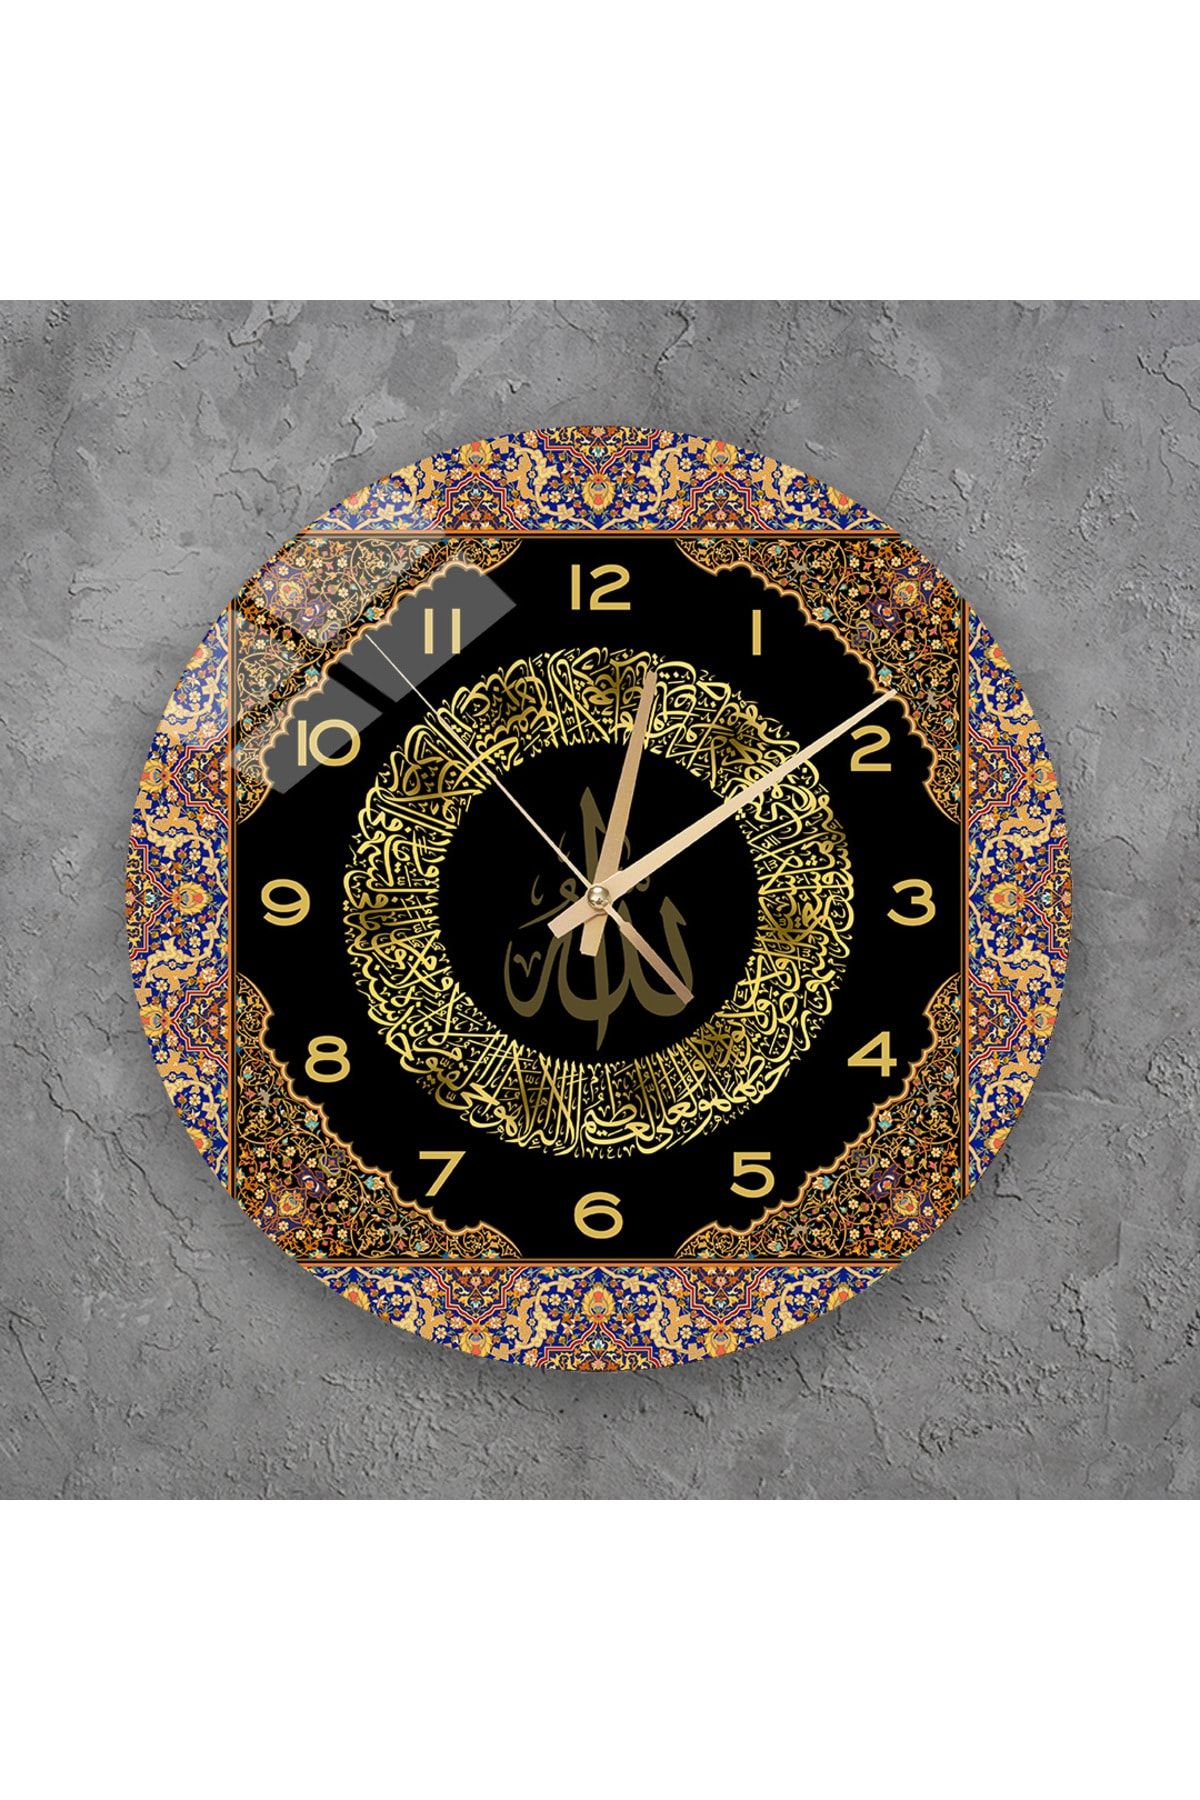 TekTablo Duvar Saati - Ayetel Kürsi Yazılı Cam Duvar Saati, Salon İçin Saat Modelleri 36x36 cm 3TKy985874199